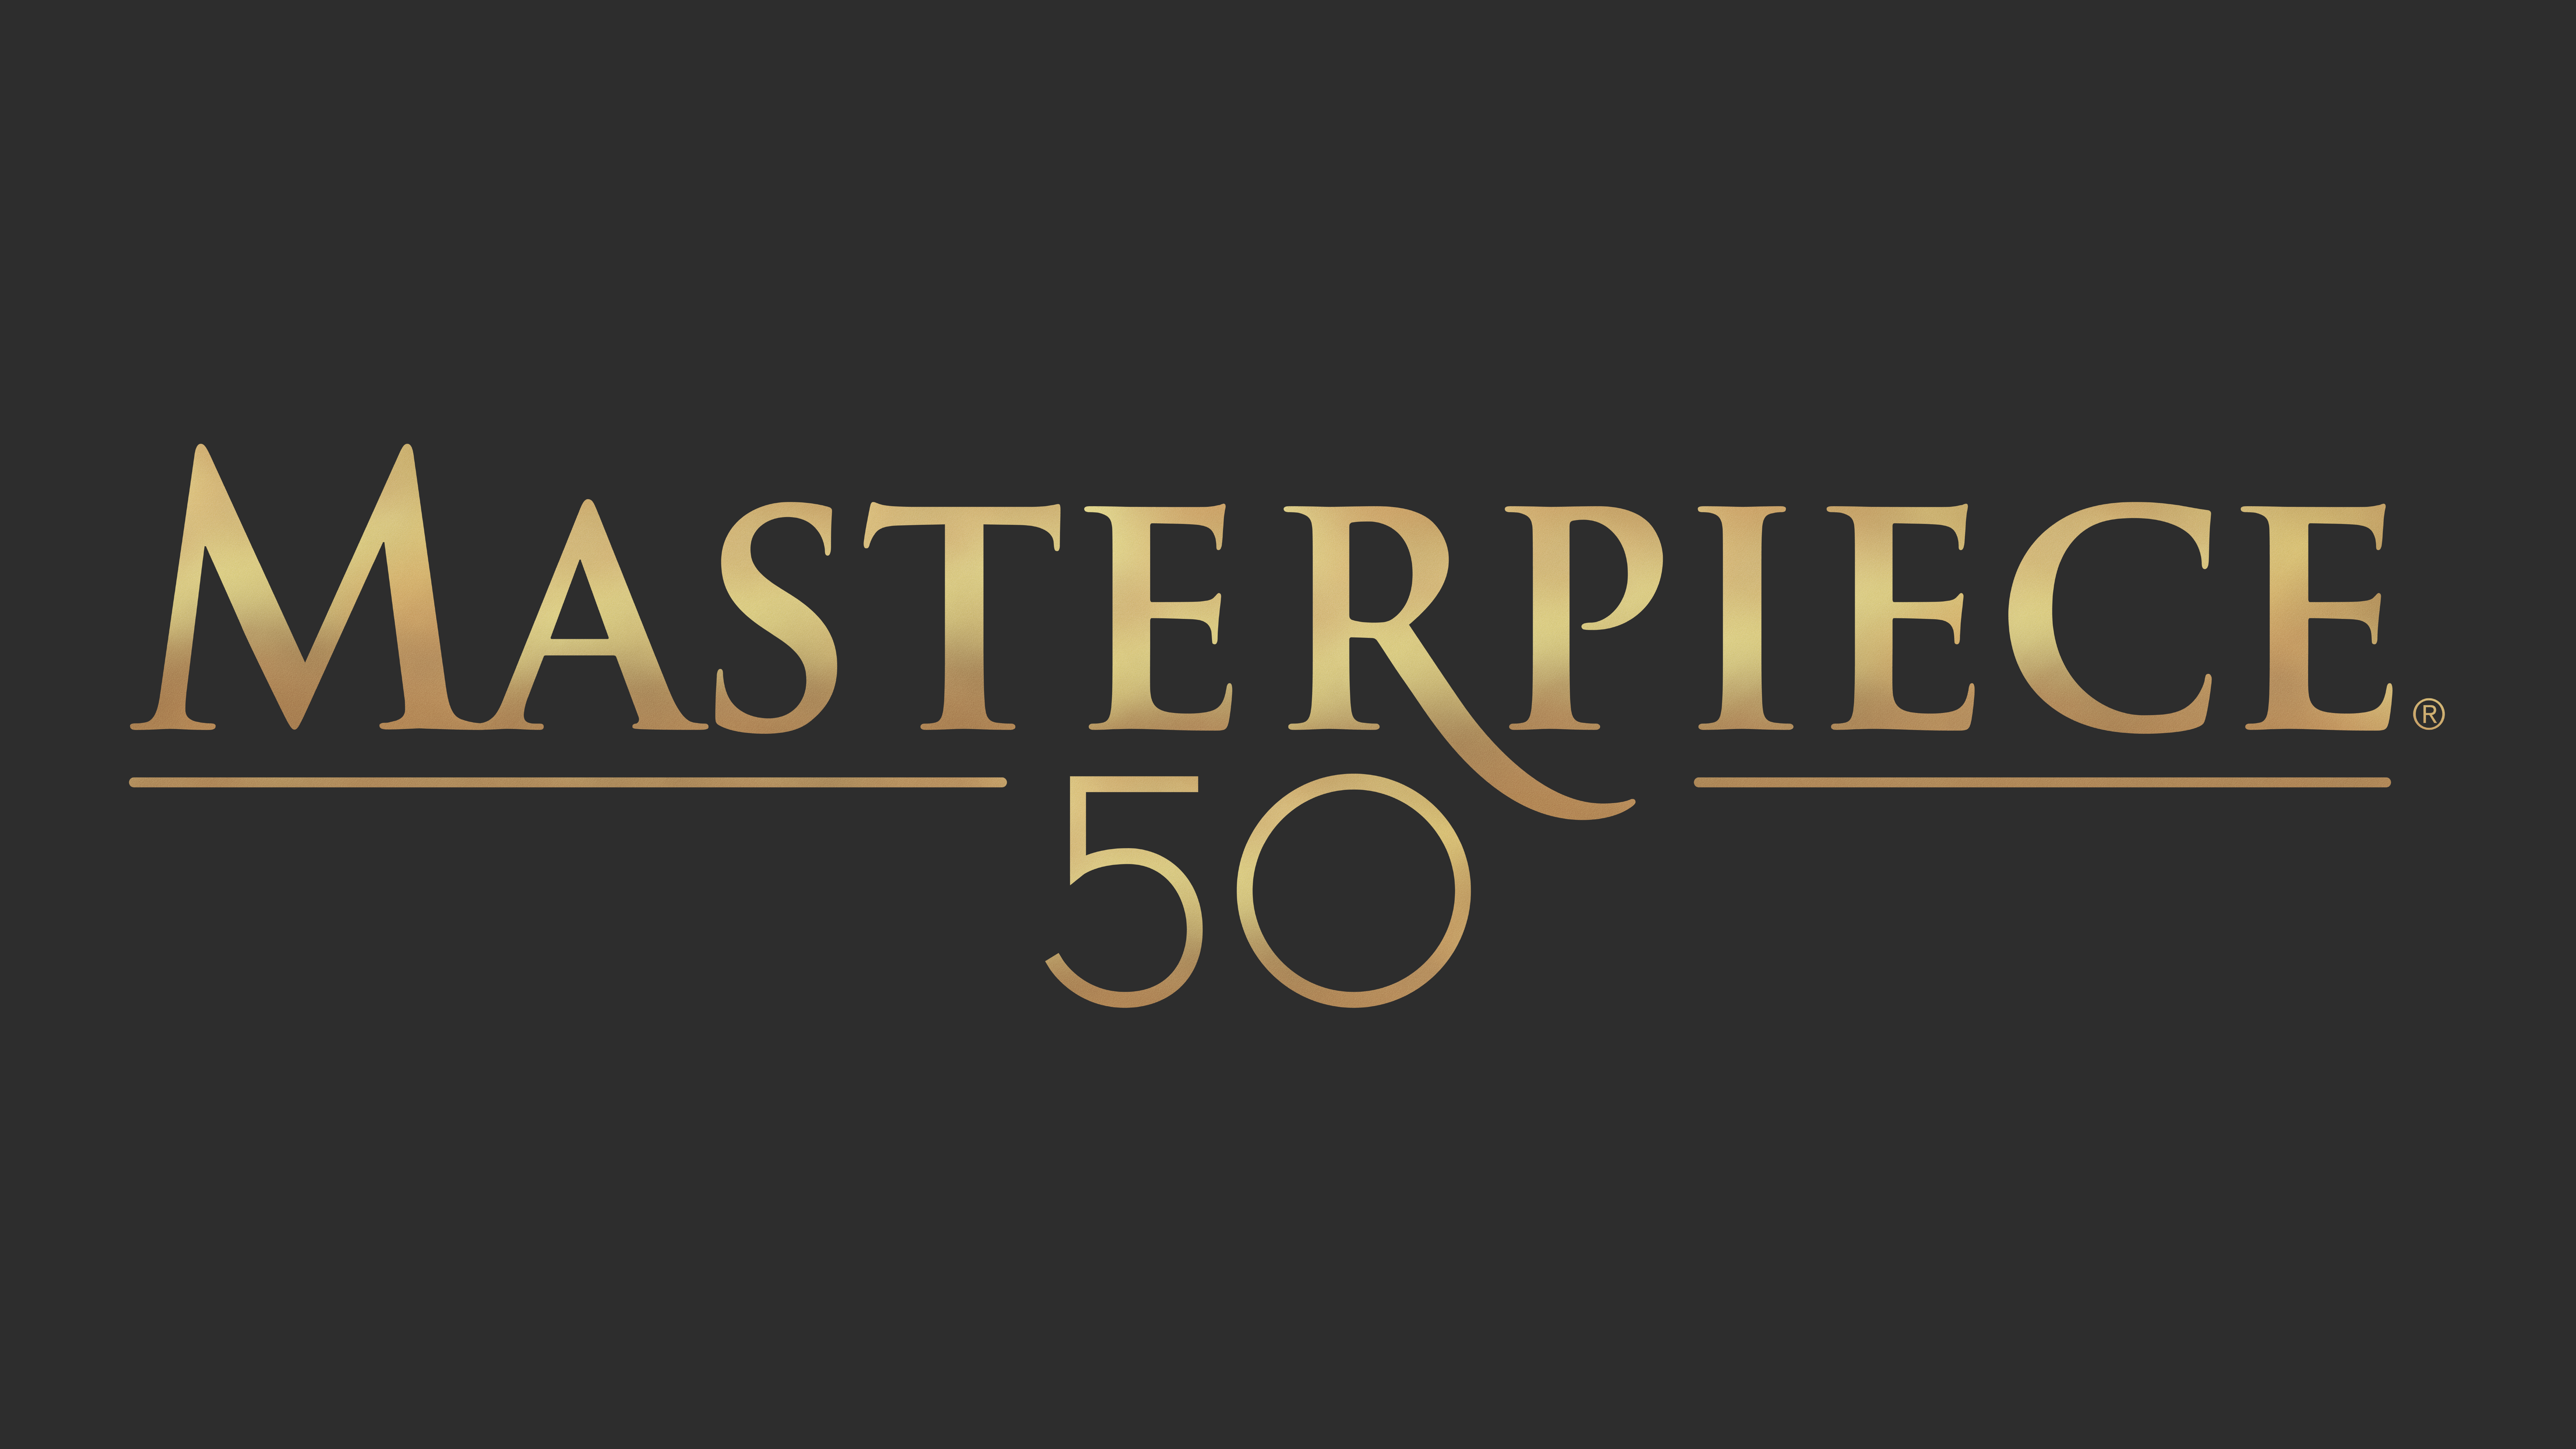 Gold MASTERPIECE 50 logo on dark background